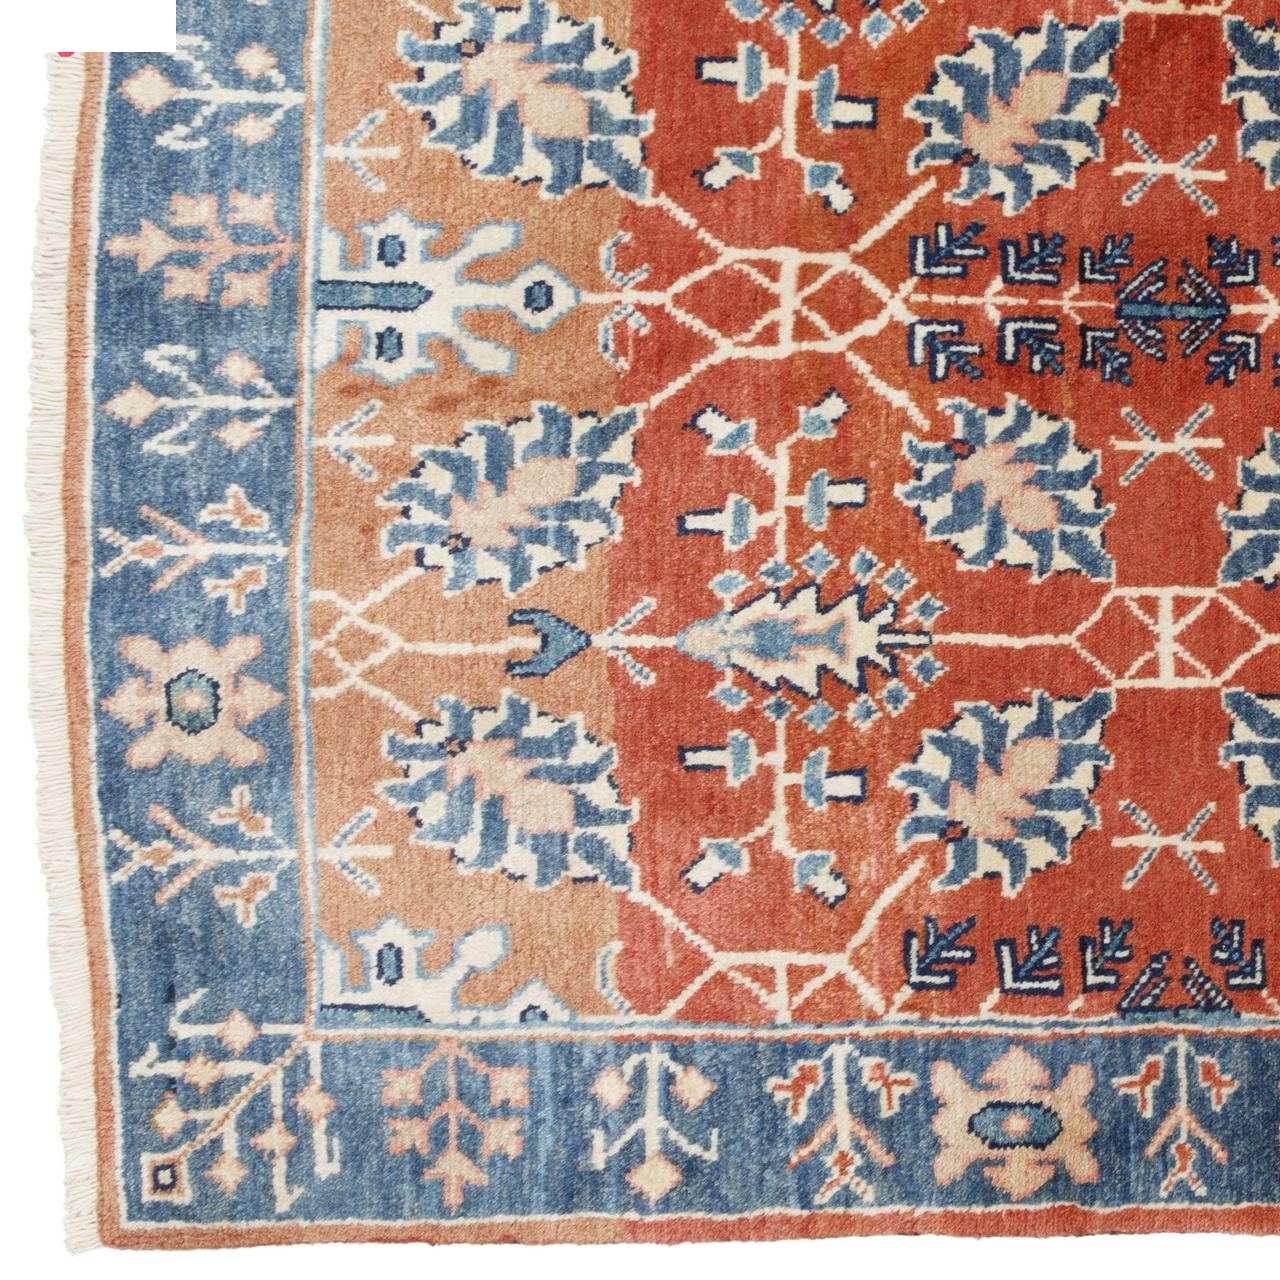 Six meter handmade carpet by Persia, code 171354